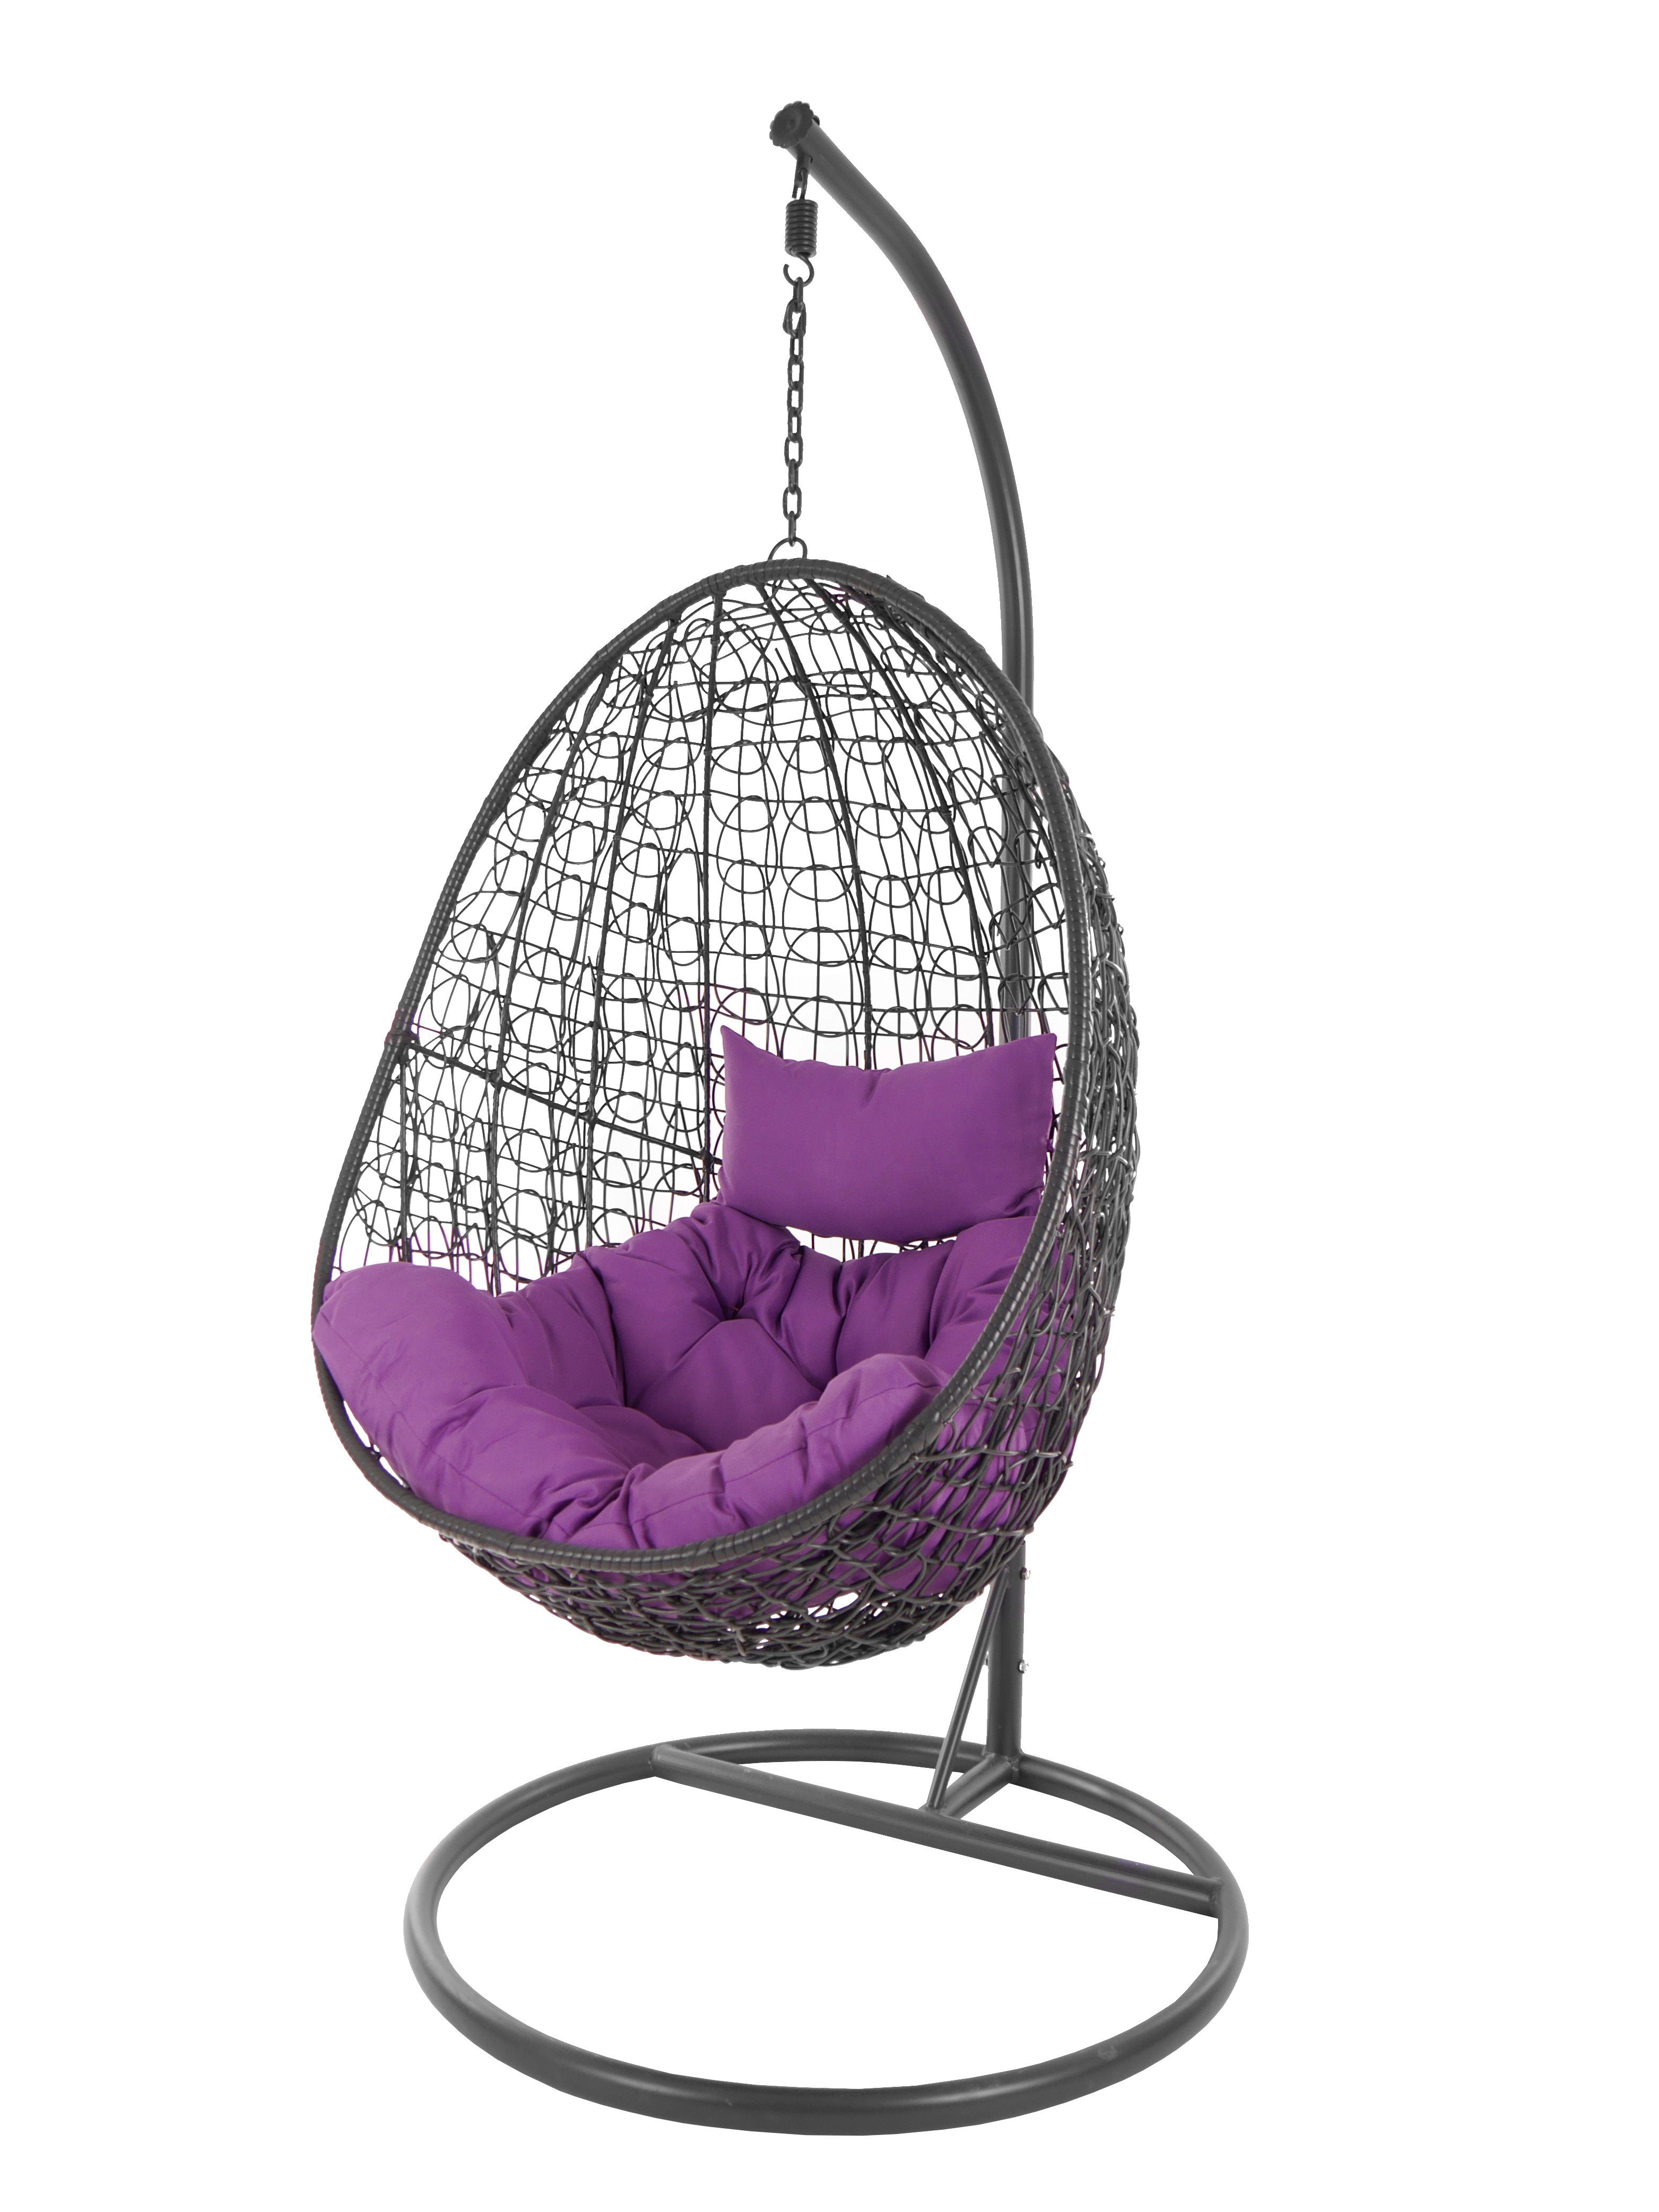 KIDEO Hängesessel Hängesessel Capdepera anthrazit, moderner Swing Chair, Schwebesessel mit Gestell und Kissen, Loungemöbel lila (4050 violet)